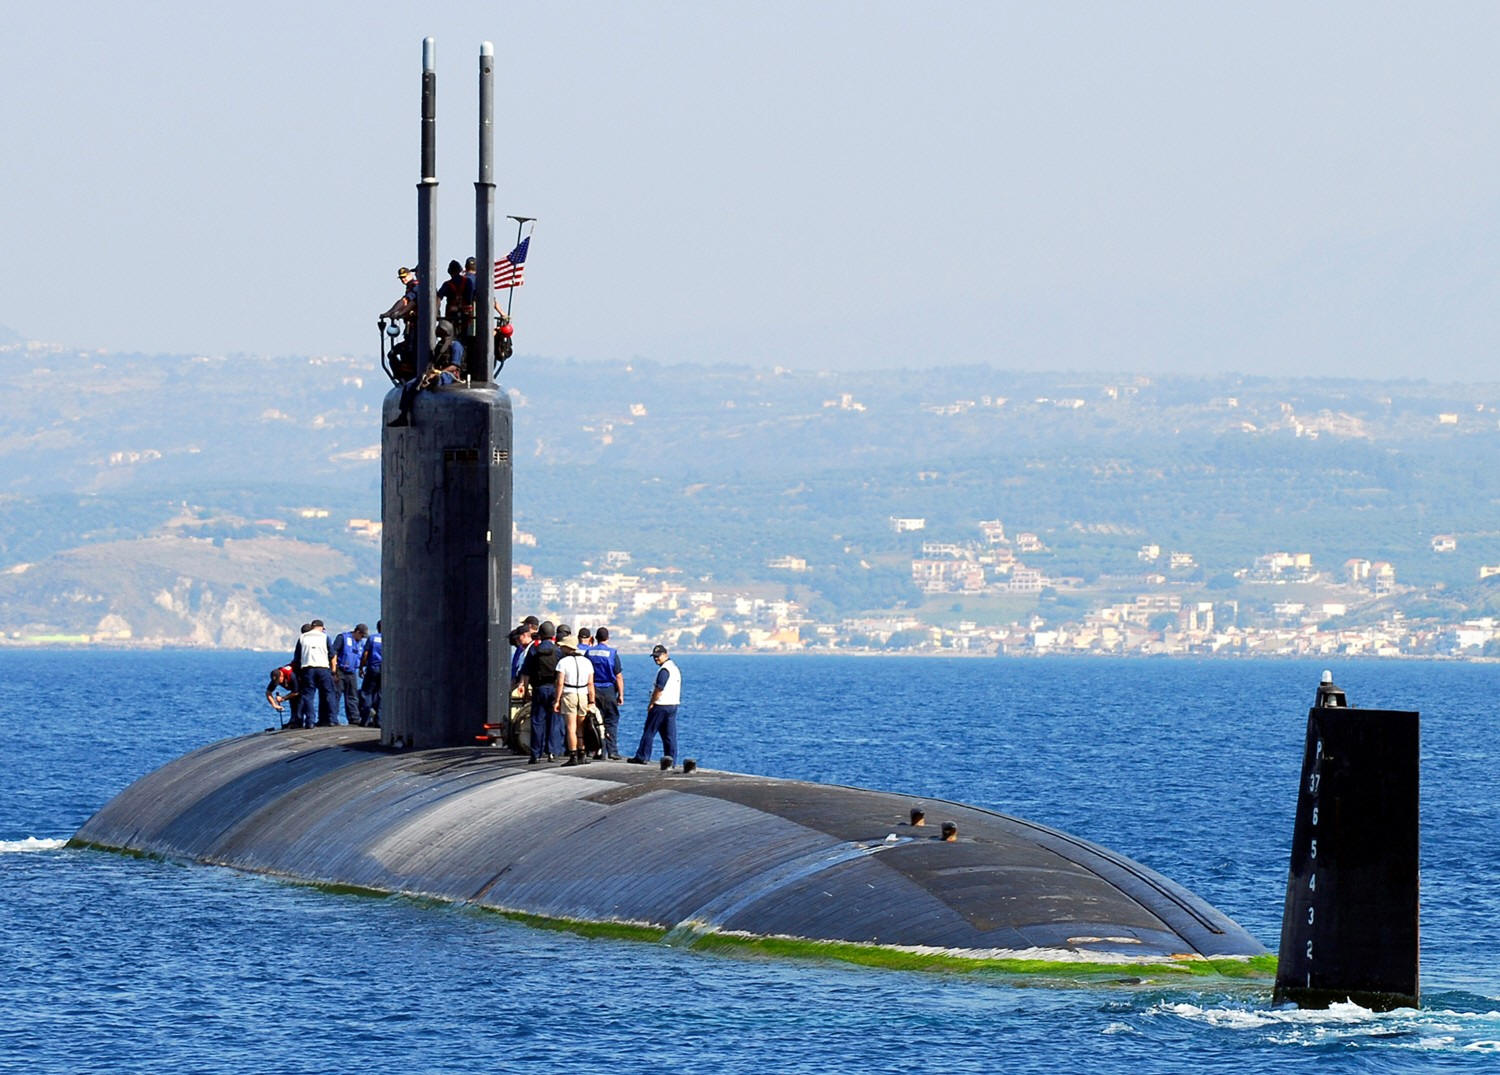 ssn-756 uss scranton attack submarine us navy